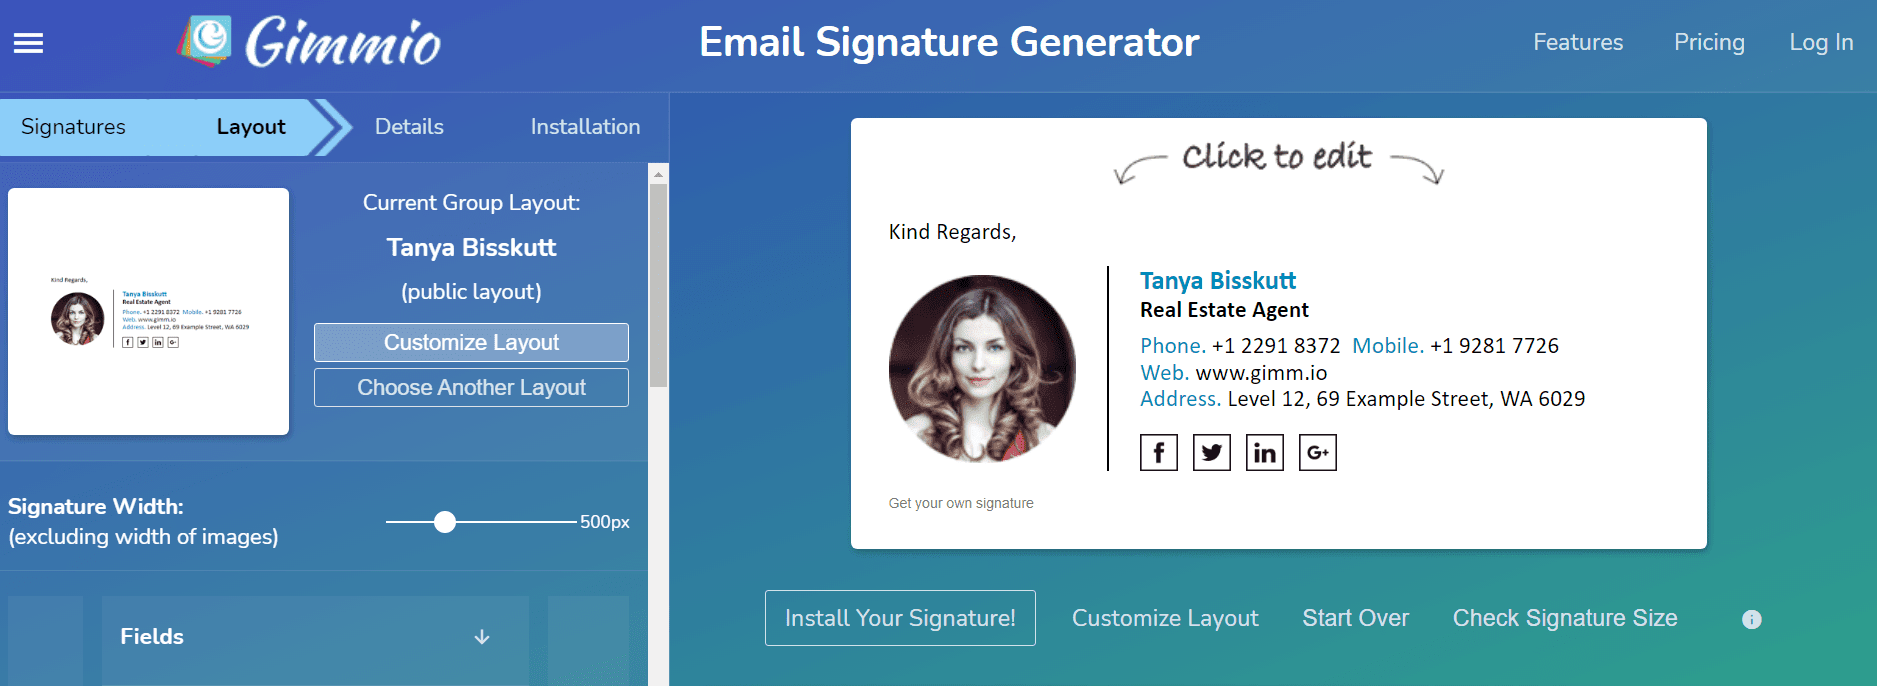 Professional Email Signature Generator _ Gimmio